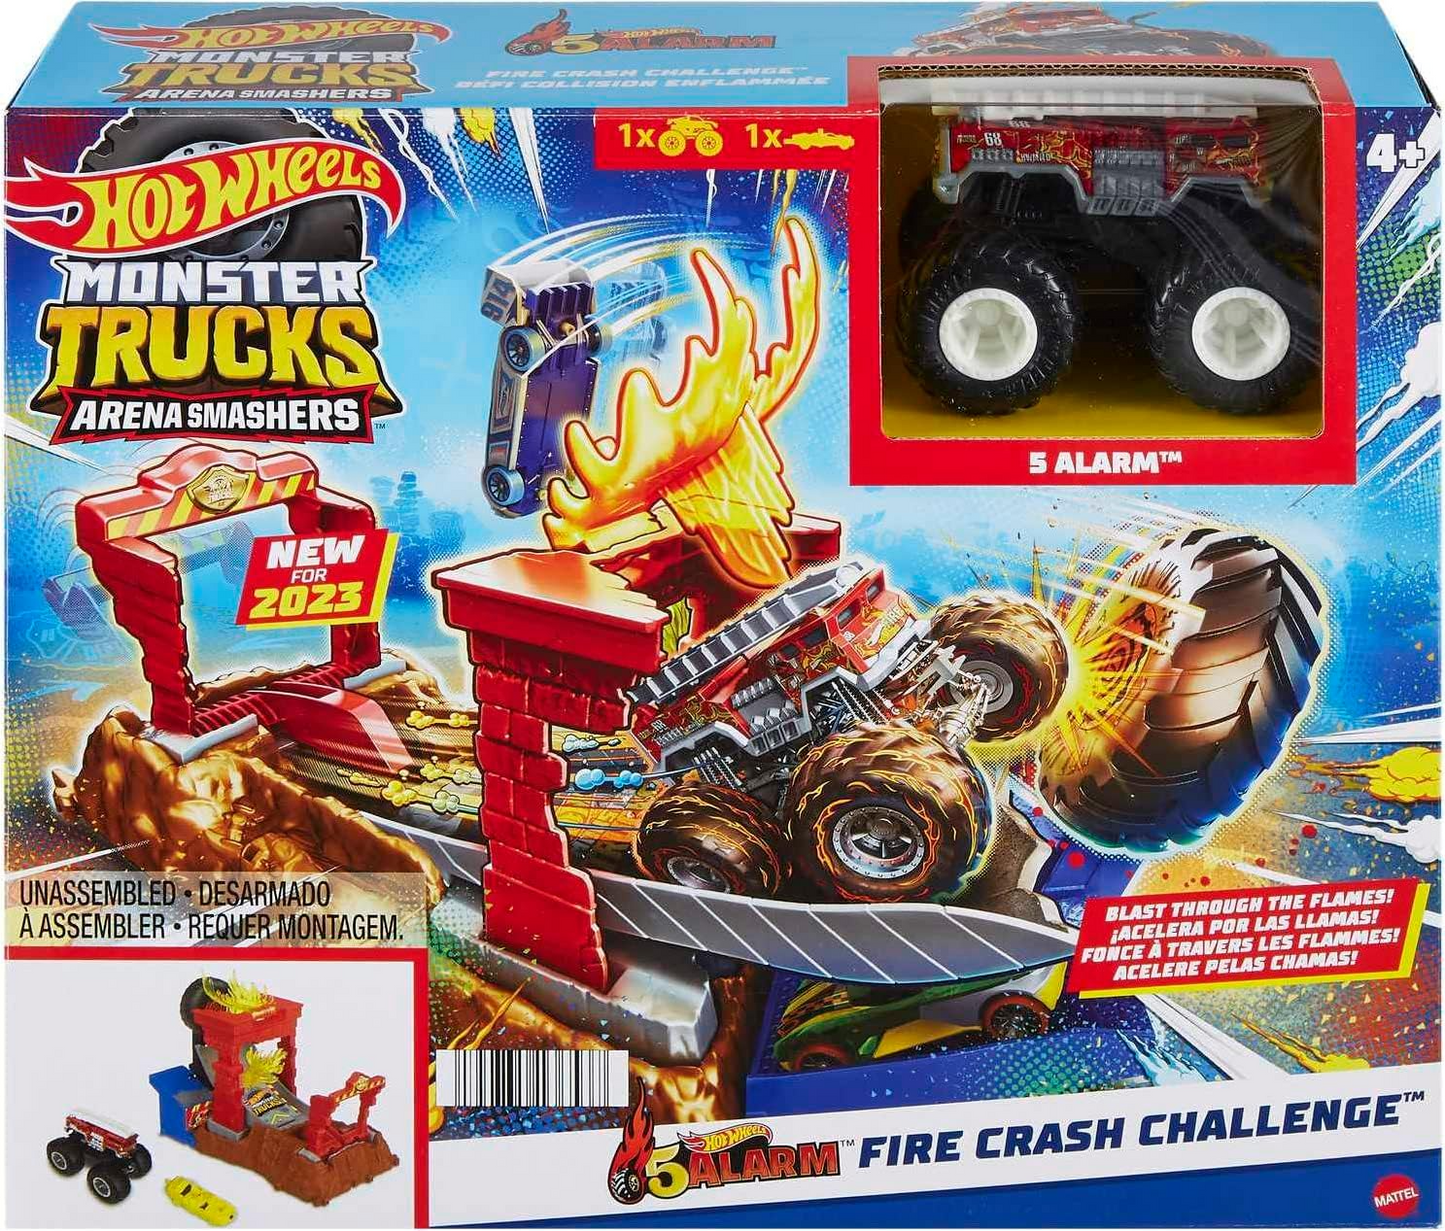 Hot Wheels Monster Trucks Arena Smashers Playset de desafio de colisão de incêndio com 5 alarmes com caminhão de brinquedo de 5 alarmes e 1 carro esmagável, HNB90